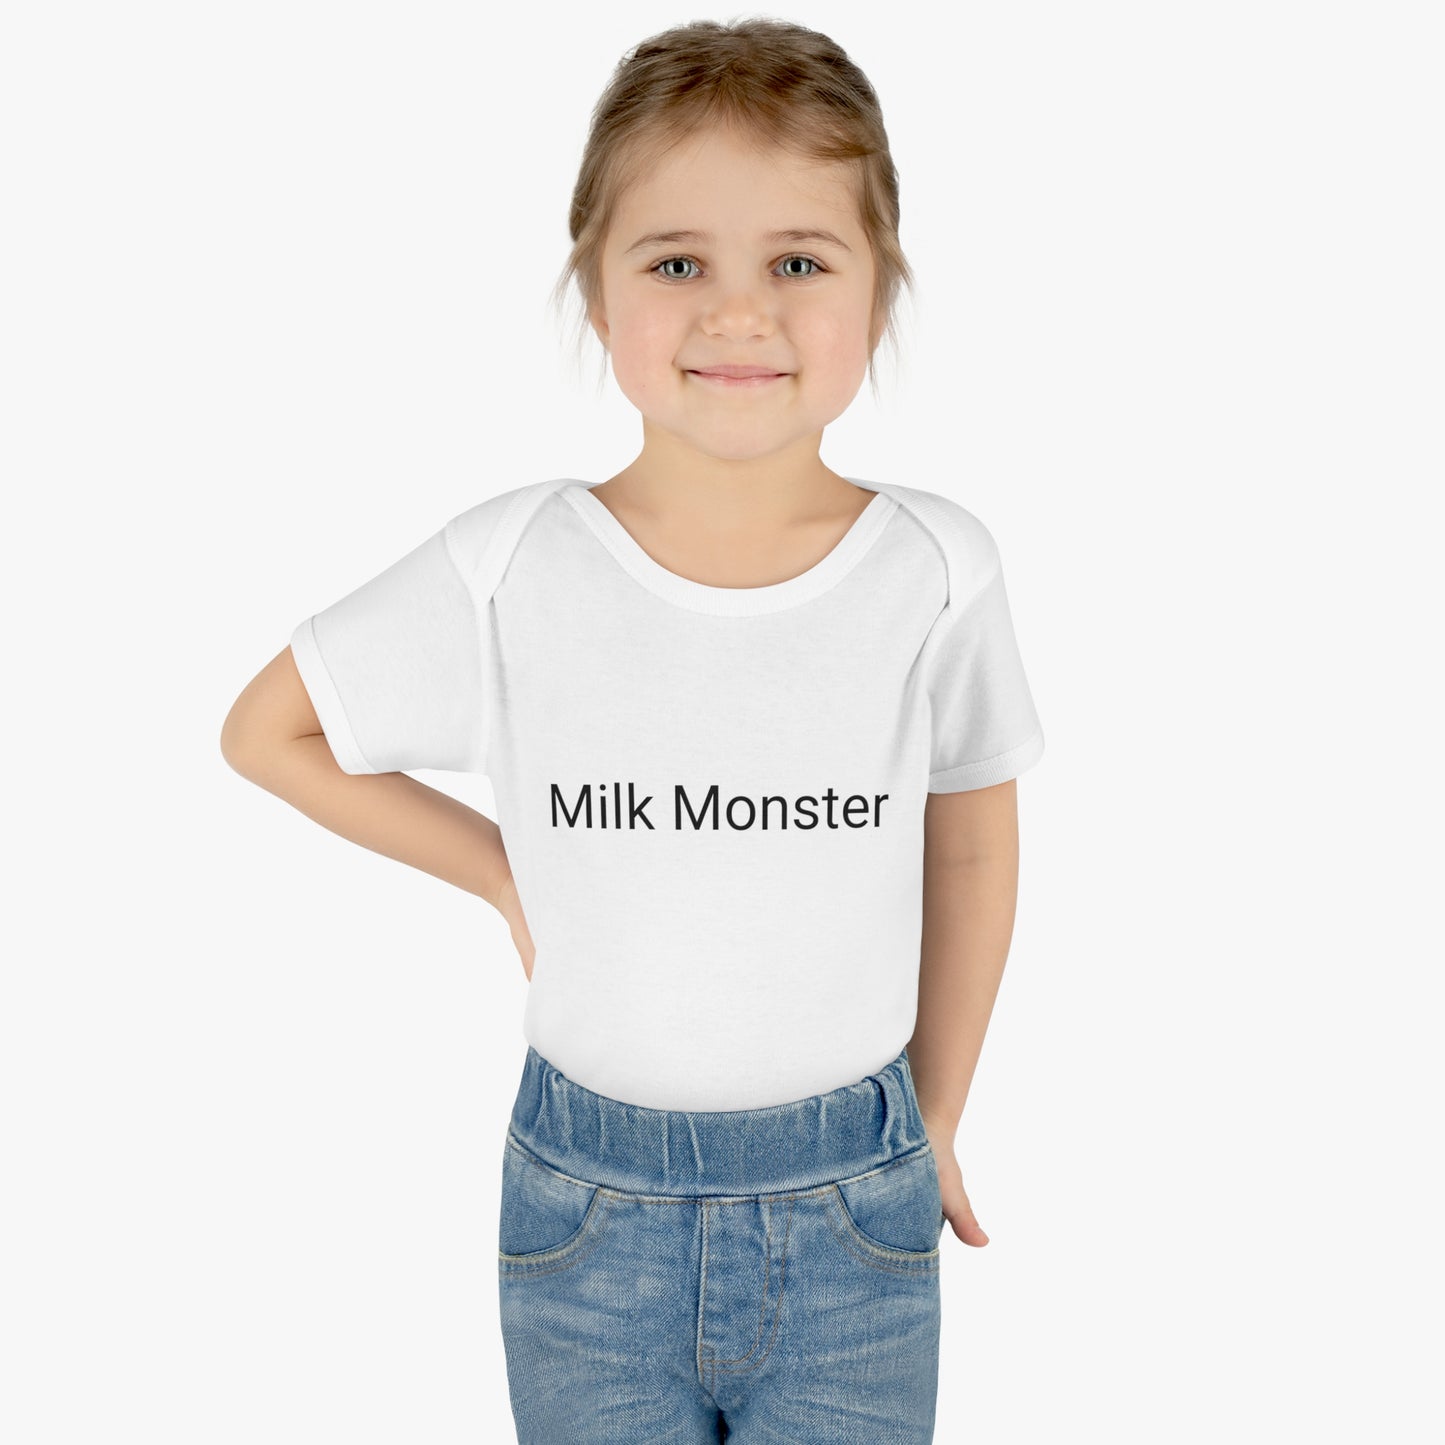 milk monster